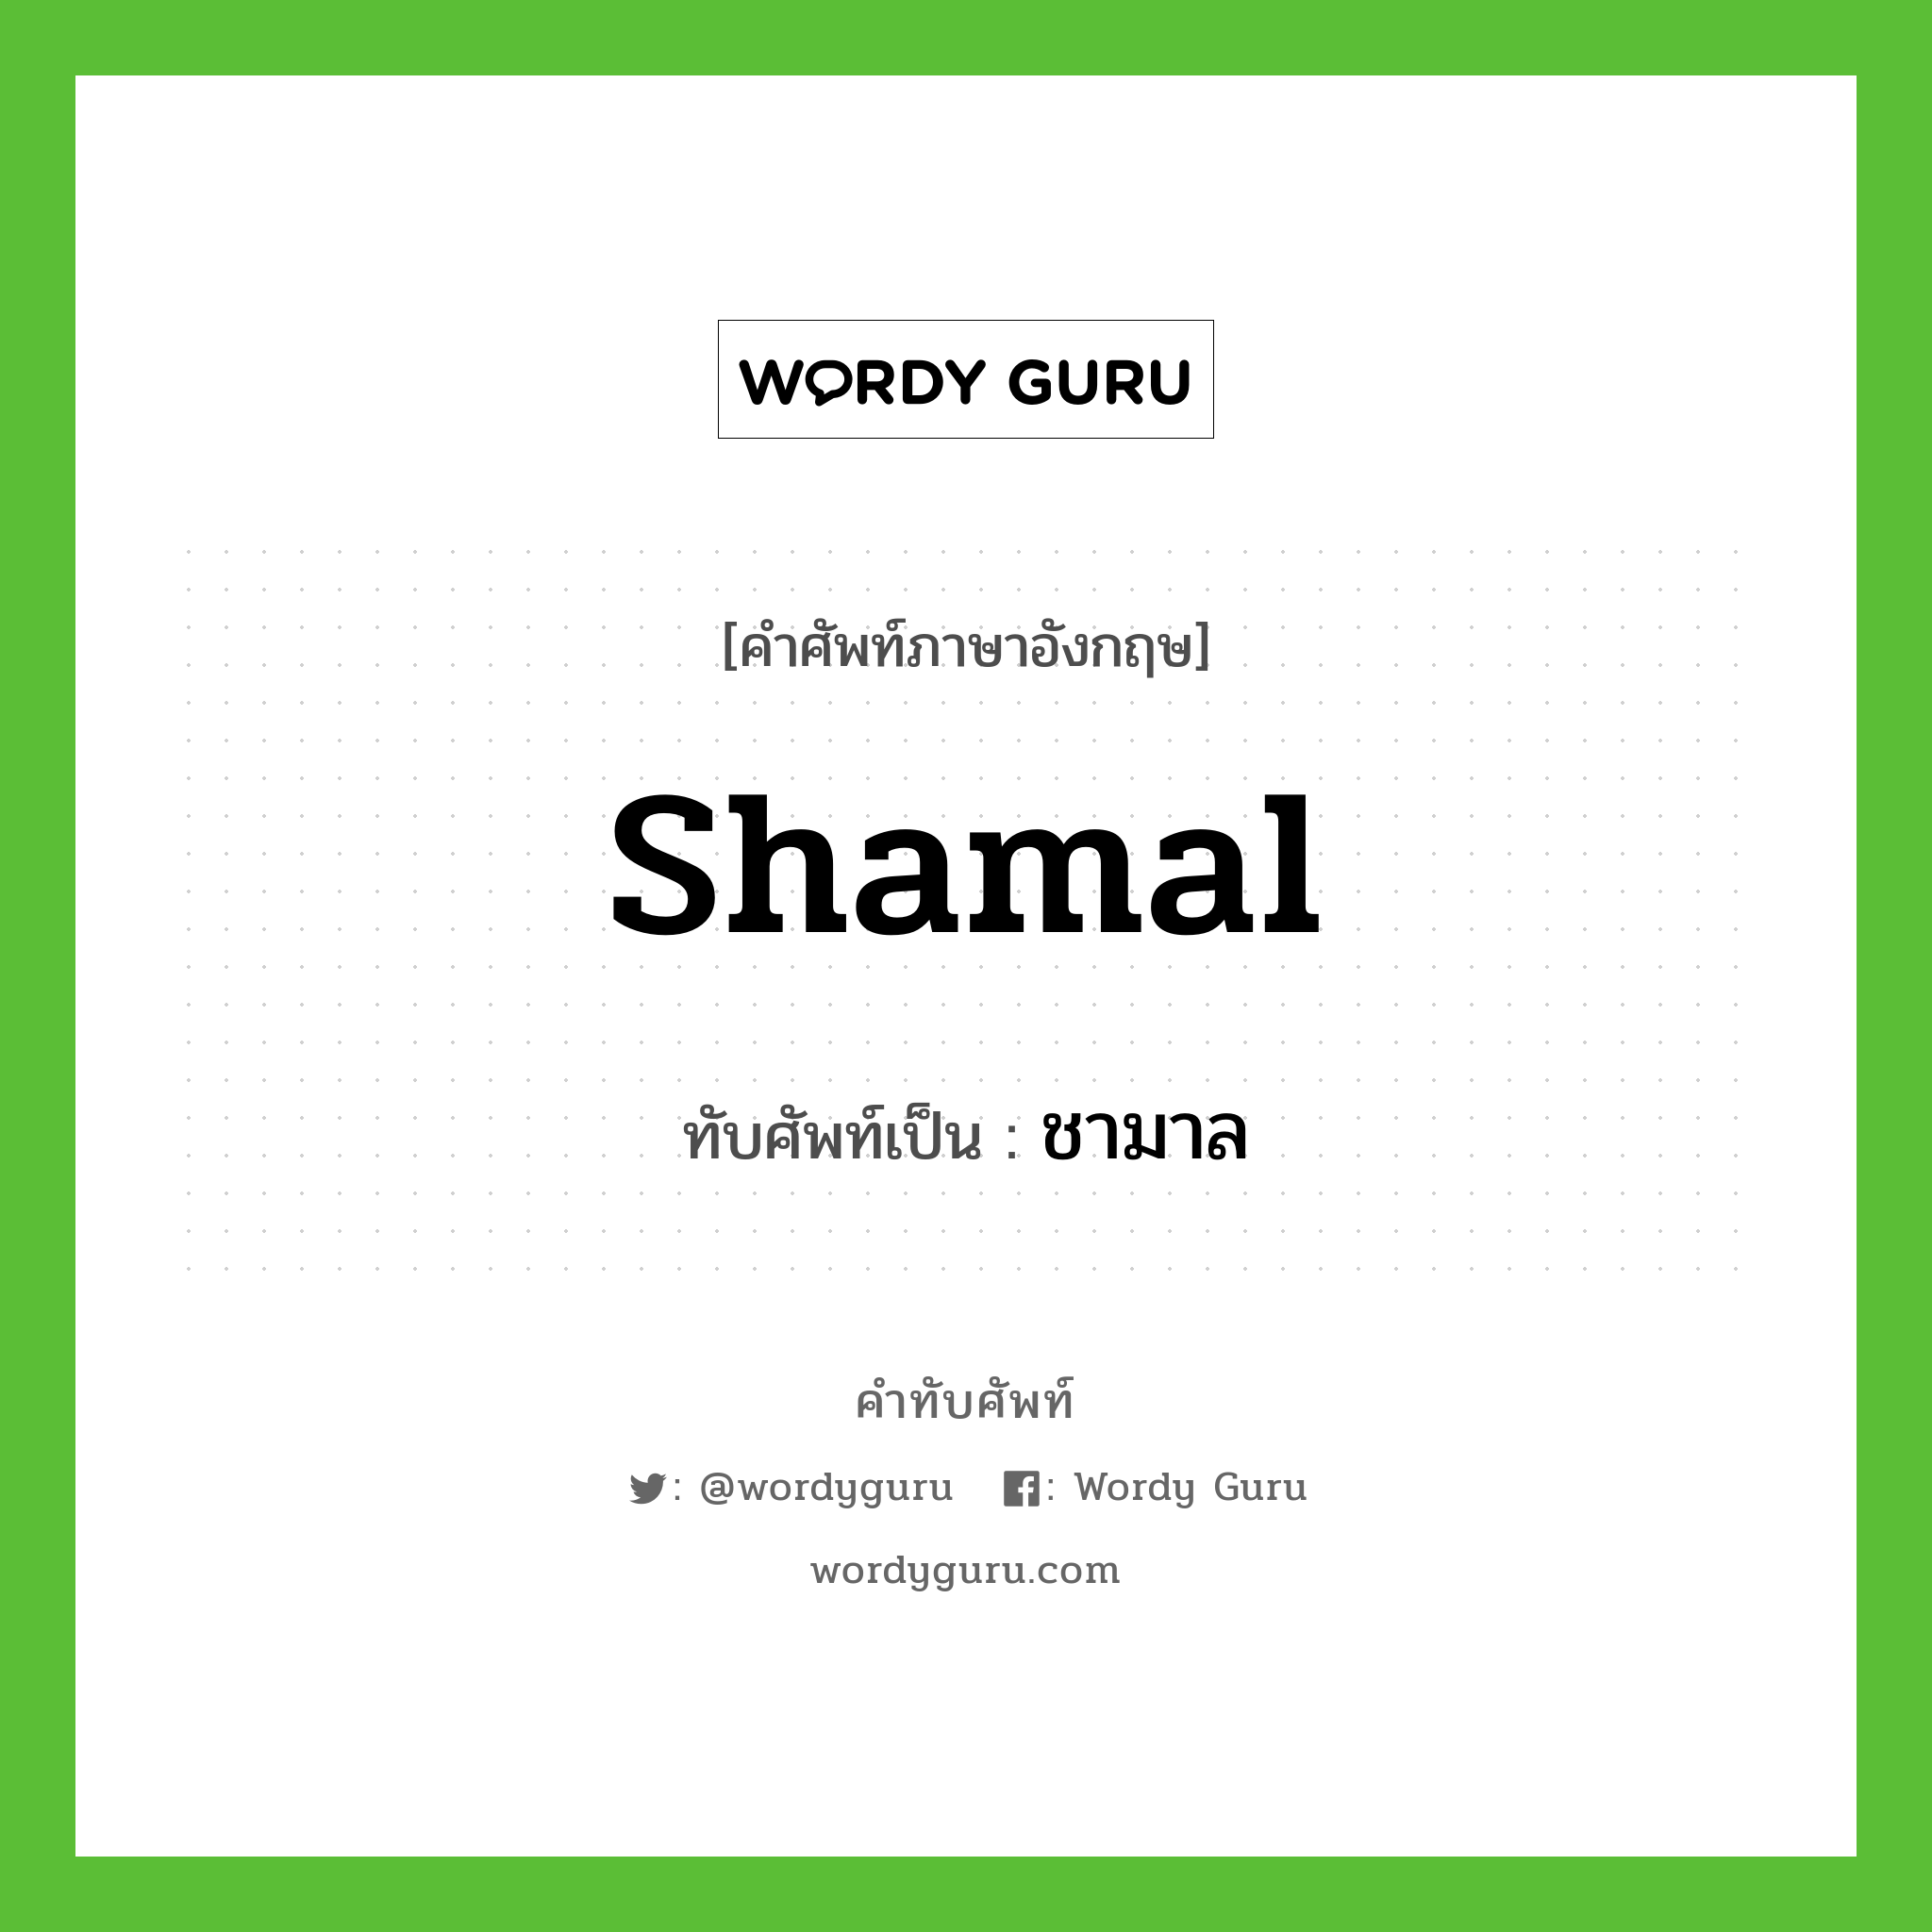 shamal เขียนเป็นคำไทยว่าอะไร?, คำศัพท์ภาษาอังกฤษ shamal ทับศัพท์เป็น ชามาล